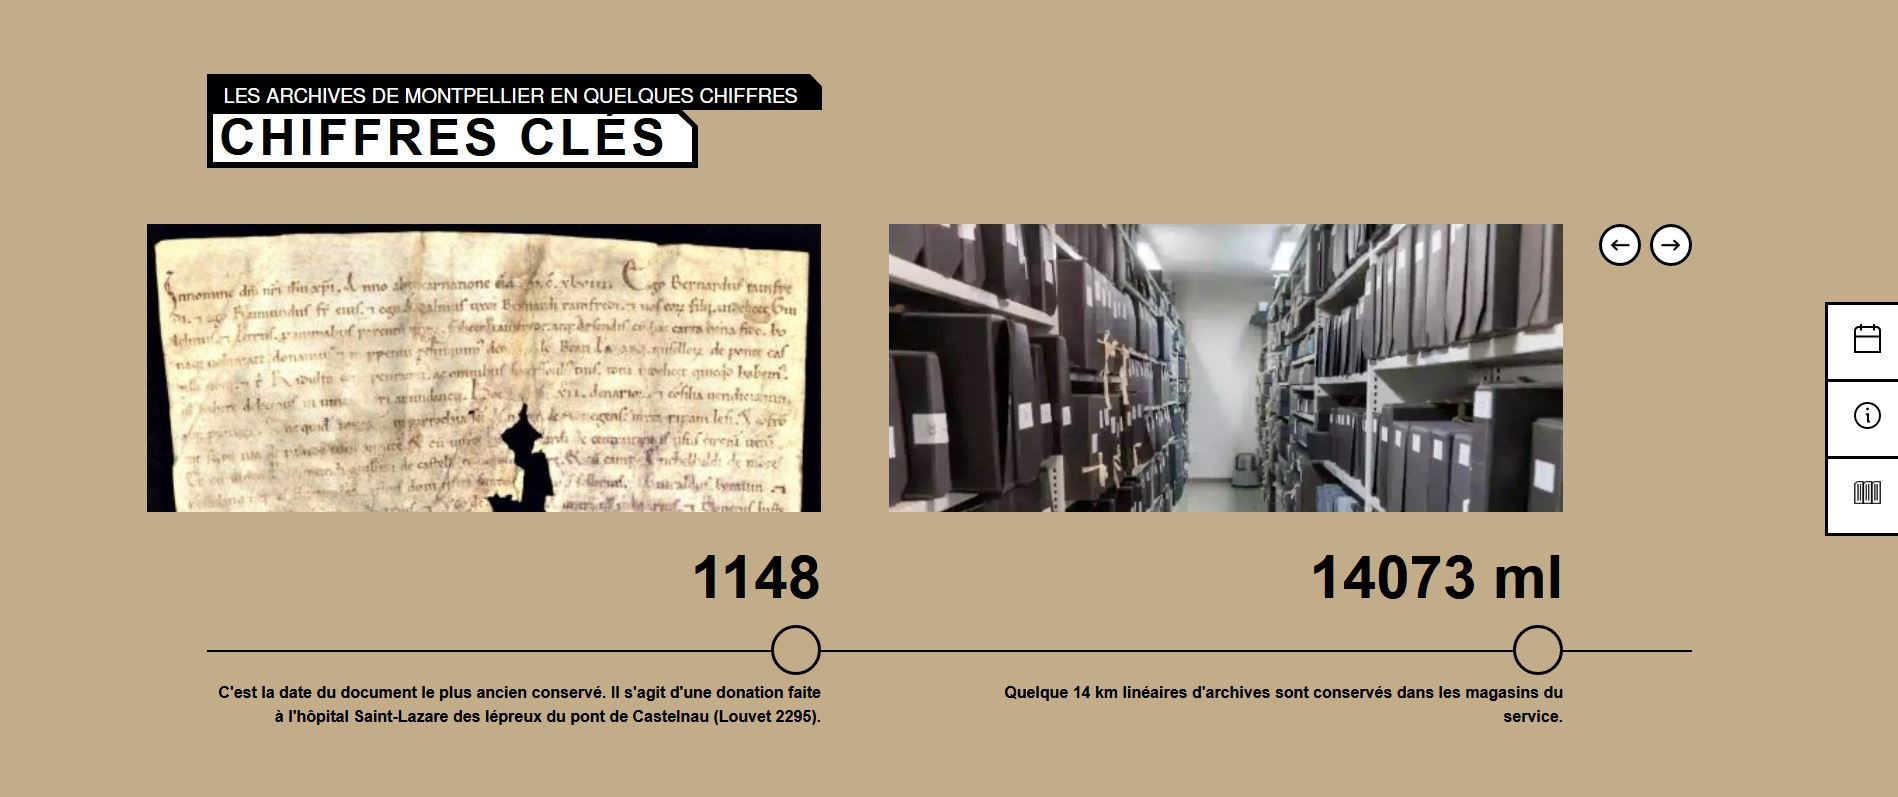 Rubrique "chiffres clés" sur le nouveau site des Archives de Montpellier